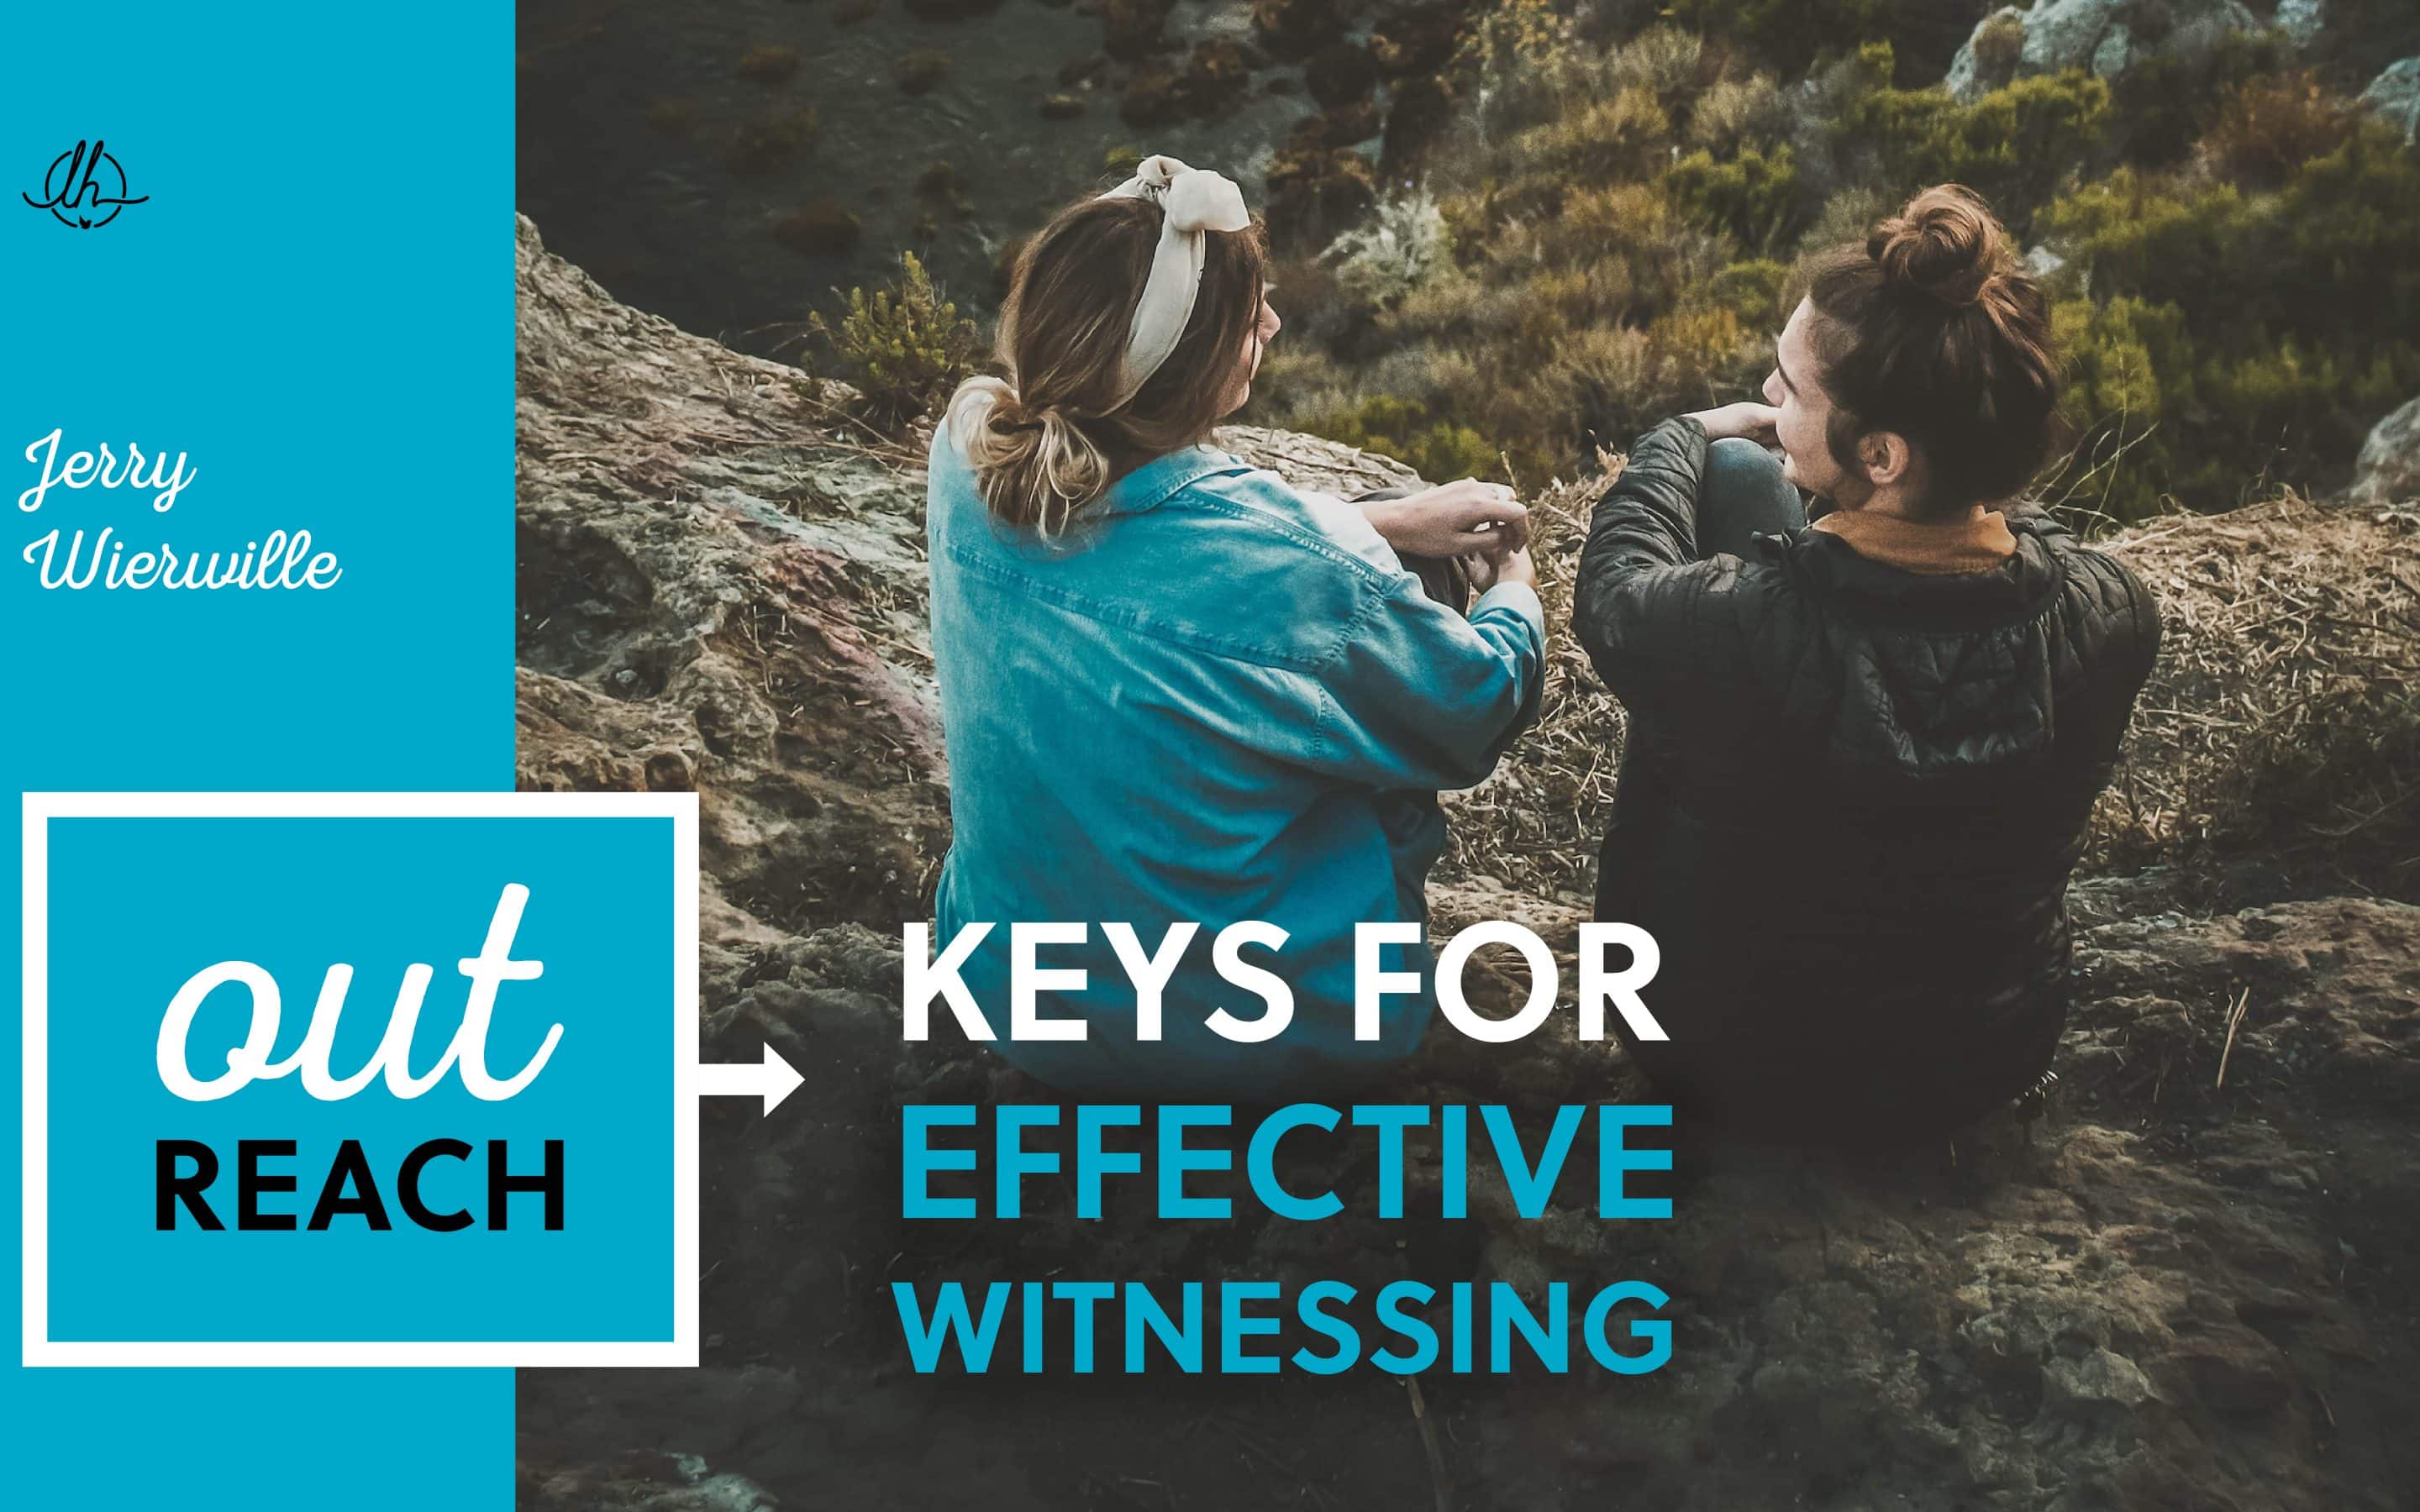 Keys for Effective Witnessing